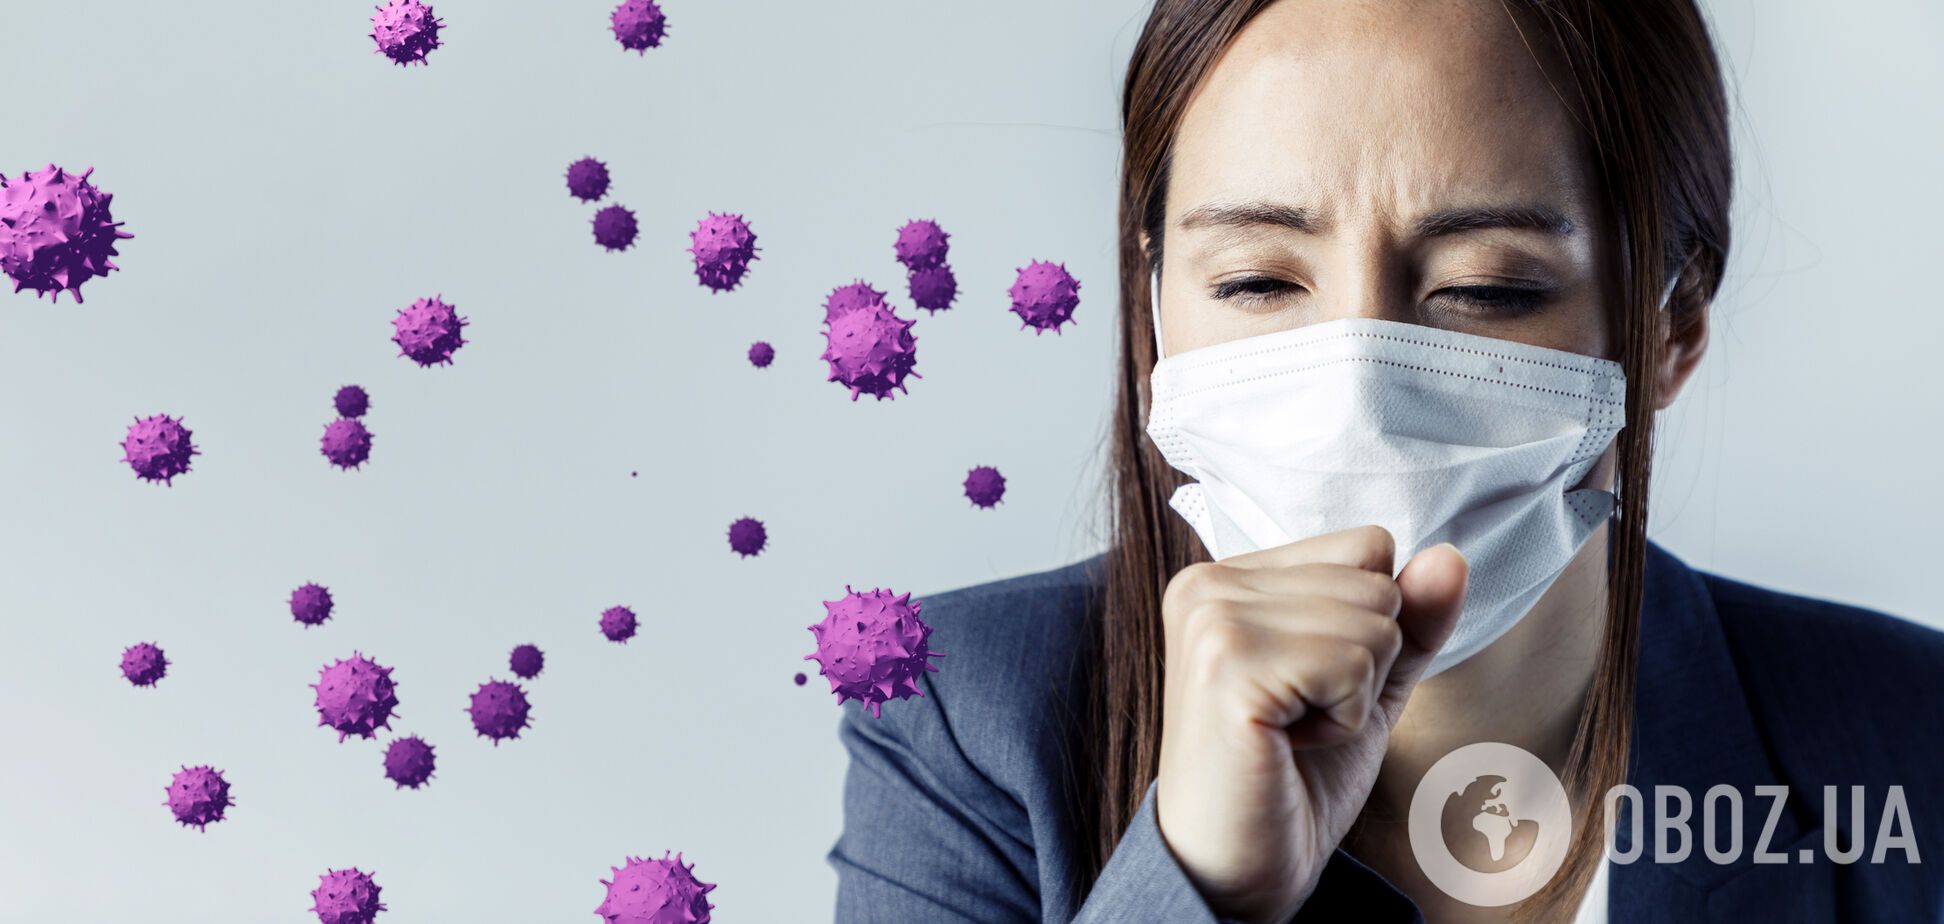 Пік епідемії коронавірусу в Україні припаде на кінець квітня: інфекціоніст назвав дату